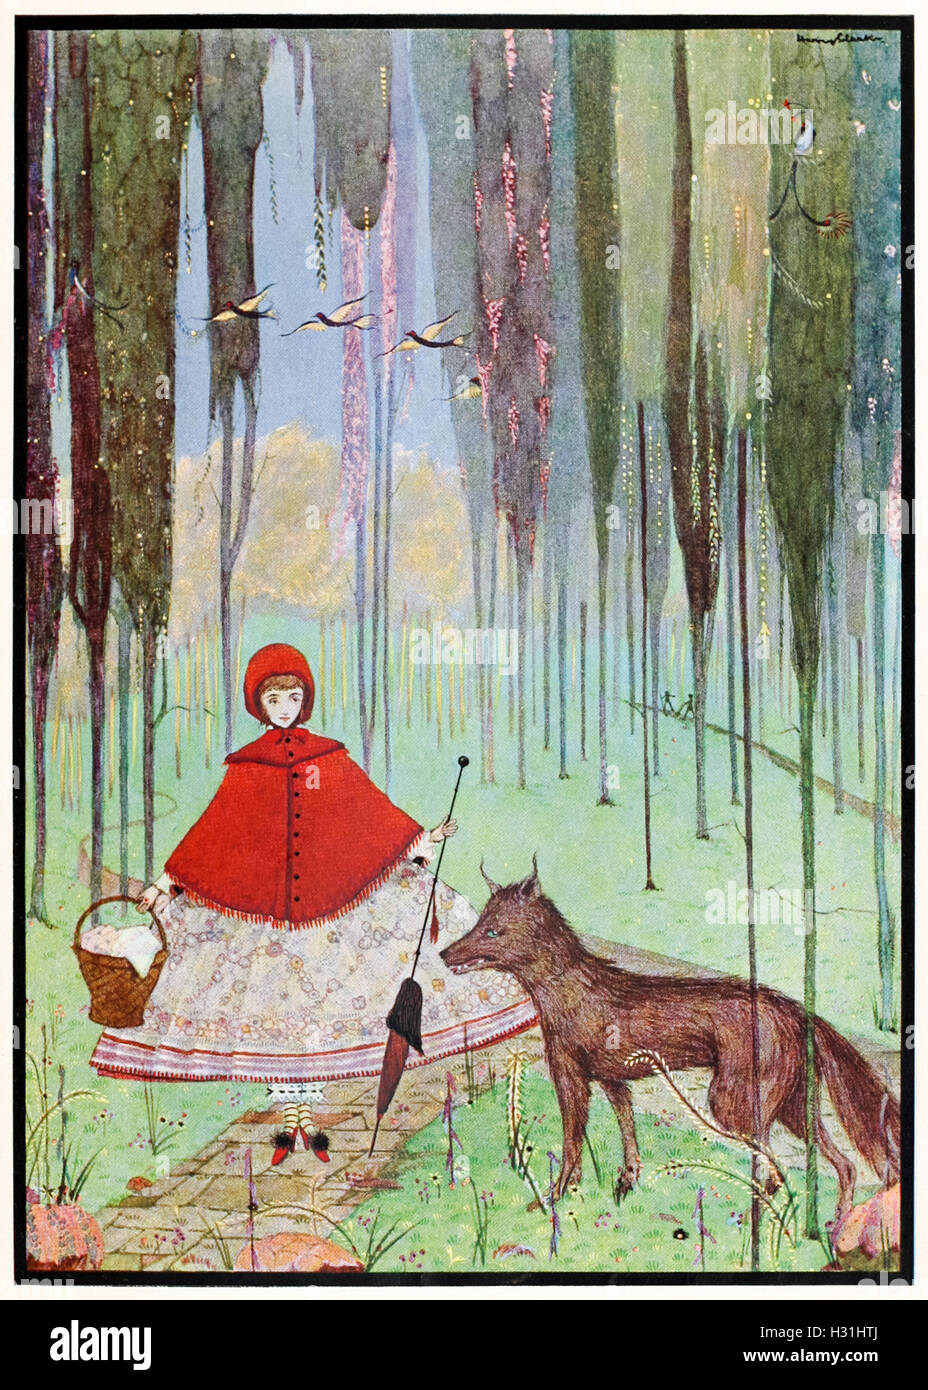 "Er fragte wohin, was sie wollte." Illustration aus "Little Riding-Hood" von Harry Clarke (1889-1931). Siehe Beschreibung für mehr Informationen. Stockfoto